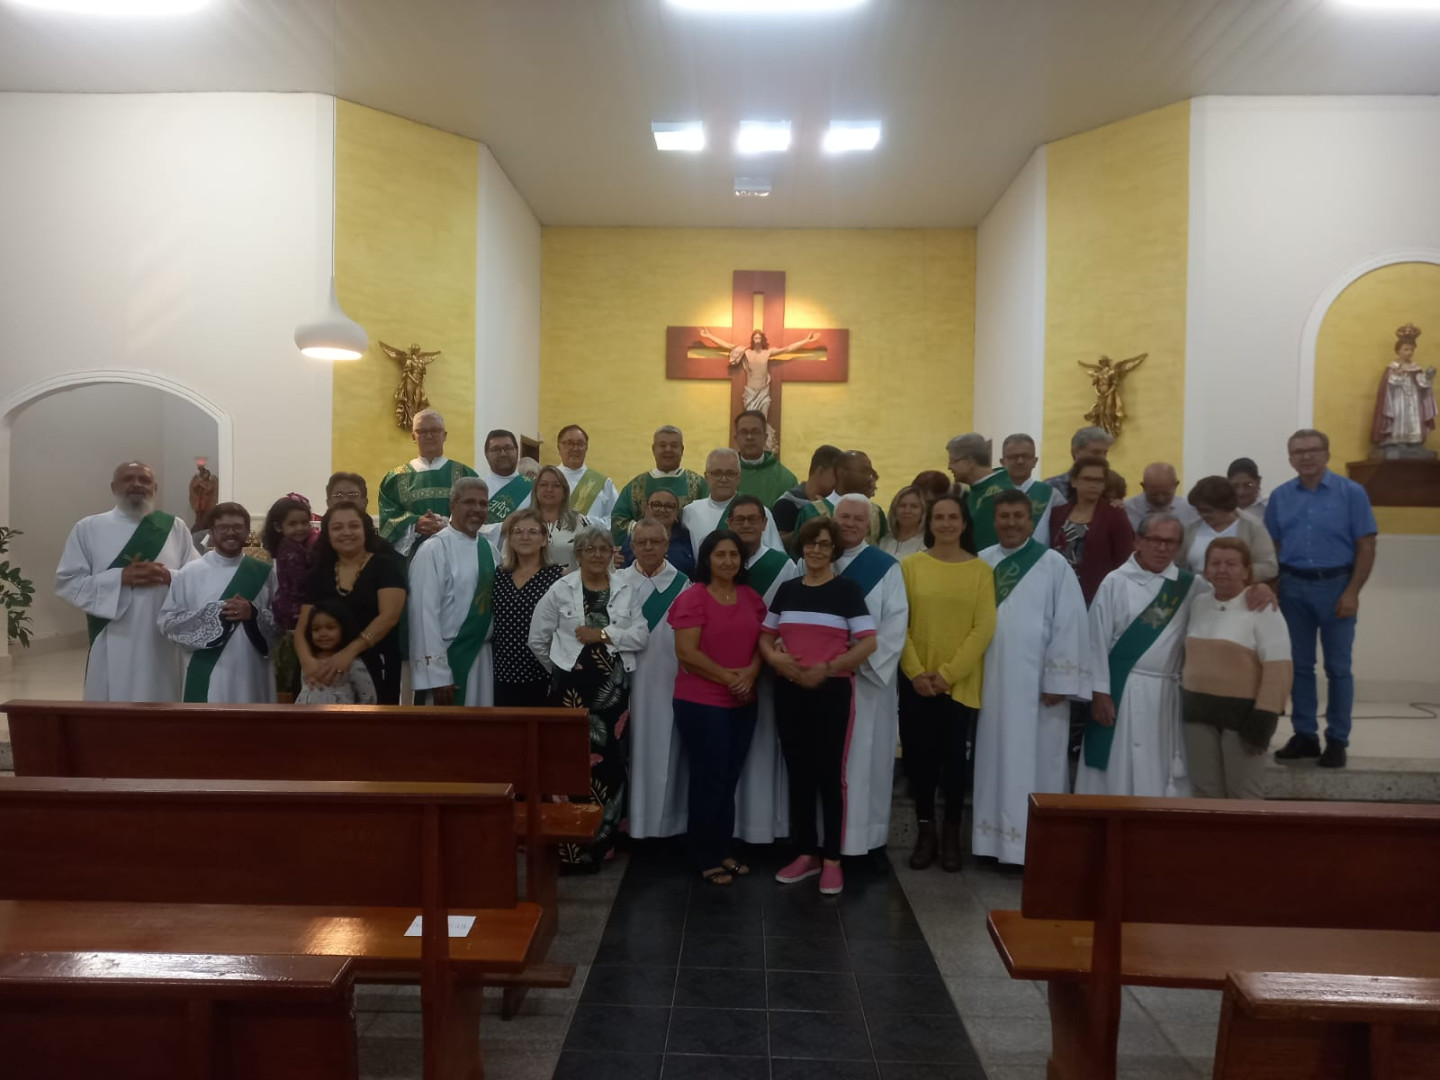 REUNIÃO DE CONFRATERNIZAÇÃO DE DIÁCONOS E ESPOSAS DA DIOCESE DE UBERLÂNDIA (MG)